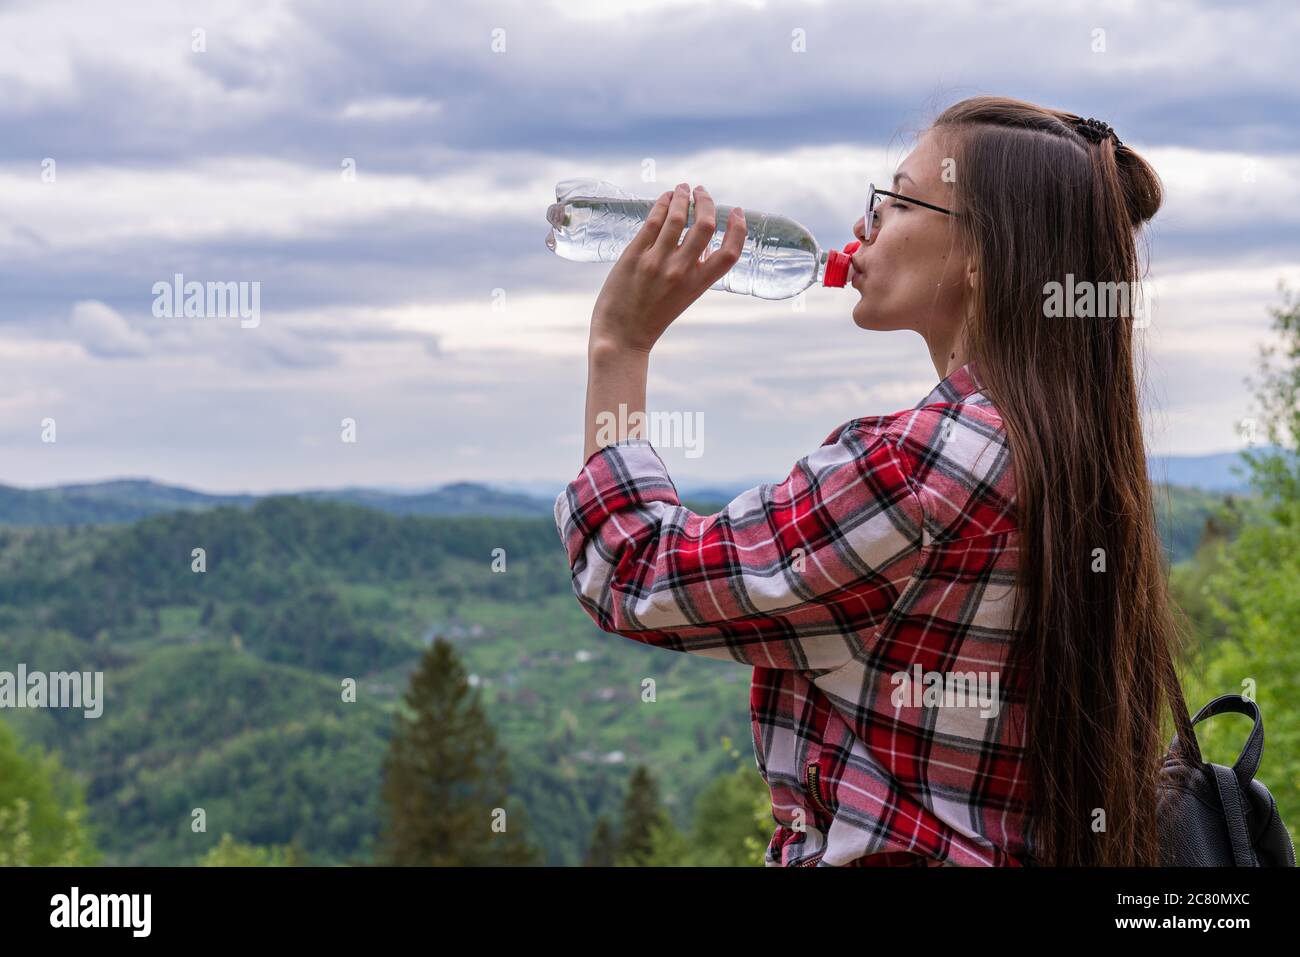 Una ragazza di aspetto europeo con capelli sciolti brunette contro un cielo nuvoloso e montagne. Beve acqua da una bottiglia. Stile di vita sano, atletico Foto Stock